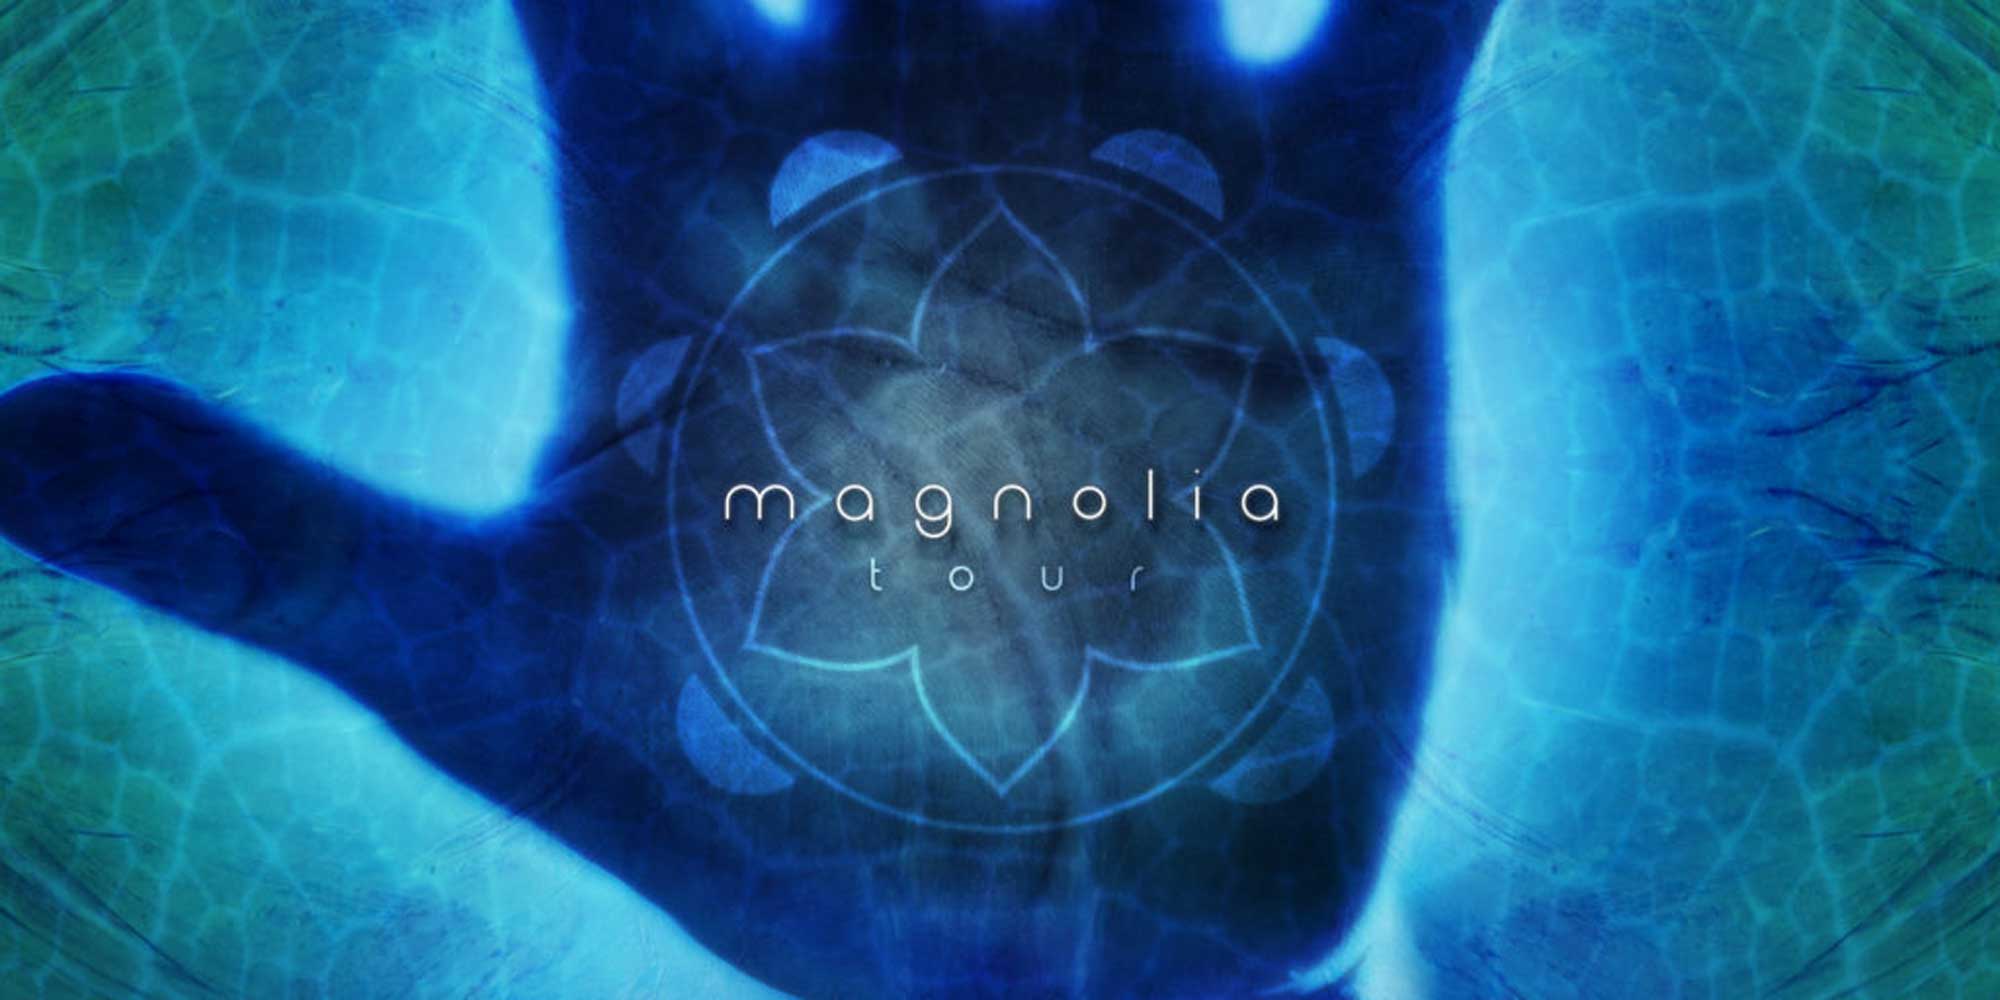 Mattanza Magnolia Tour